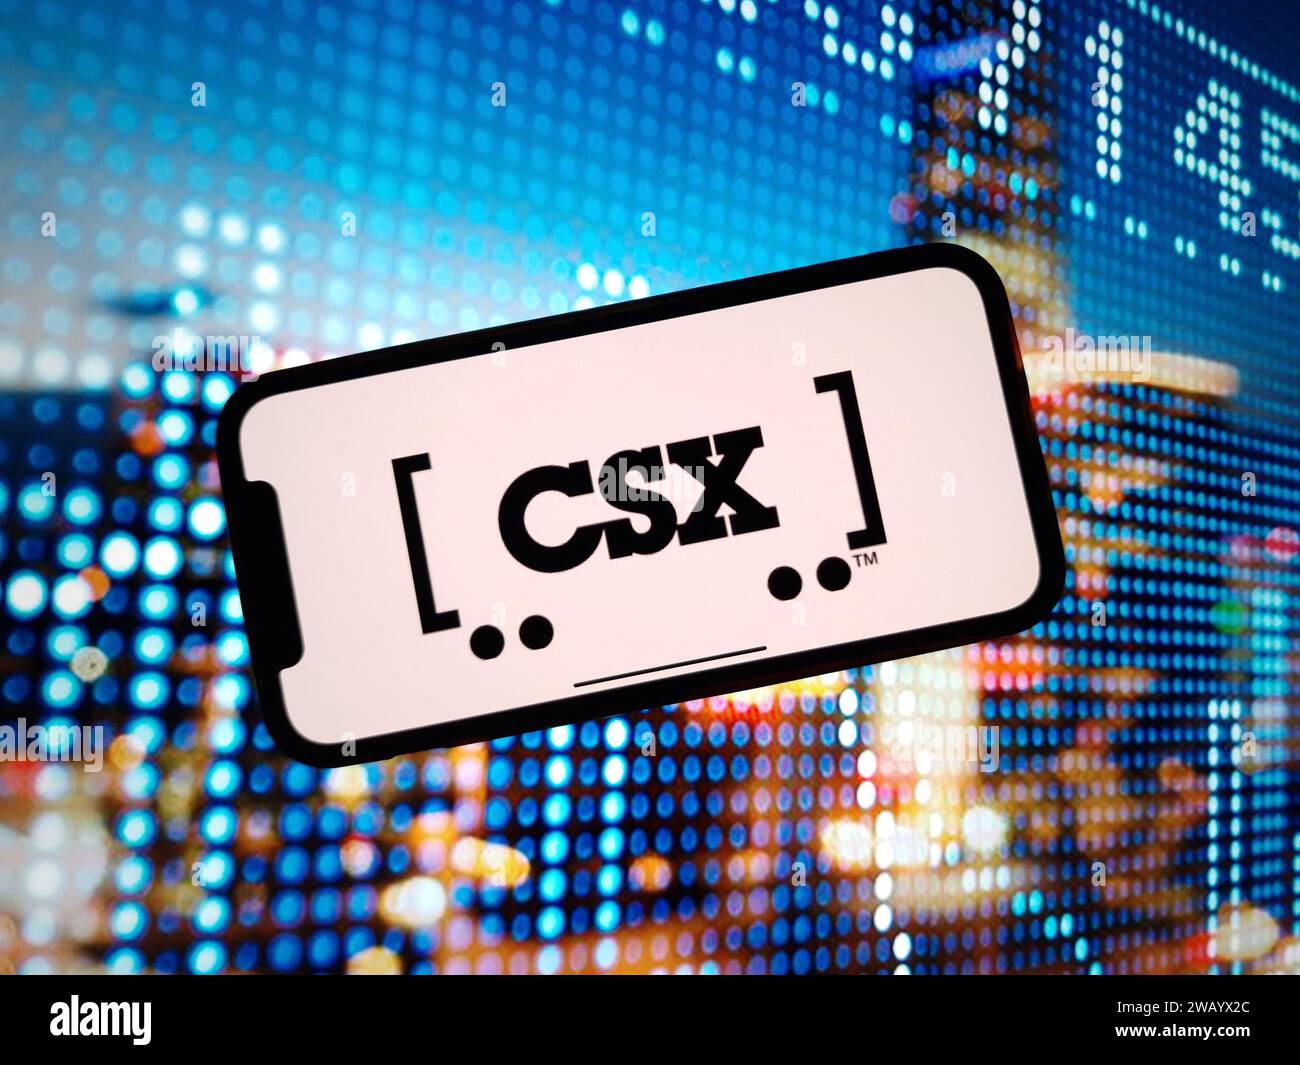 KONSKIE, Pologne - 07 janvier 2024 : logo de la société CSX Corporation affiché sur l'écran du téléphone portable Banque D'Images